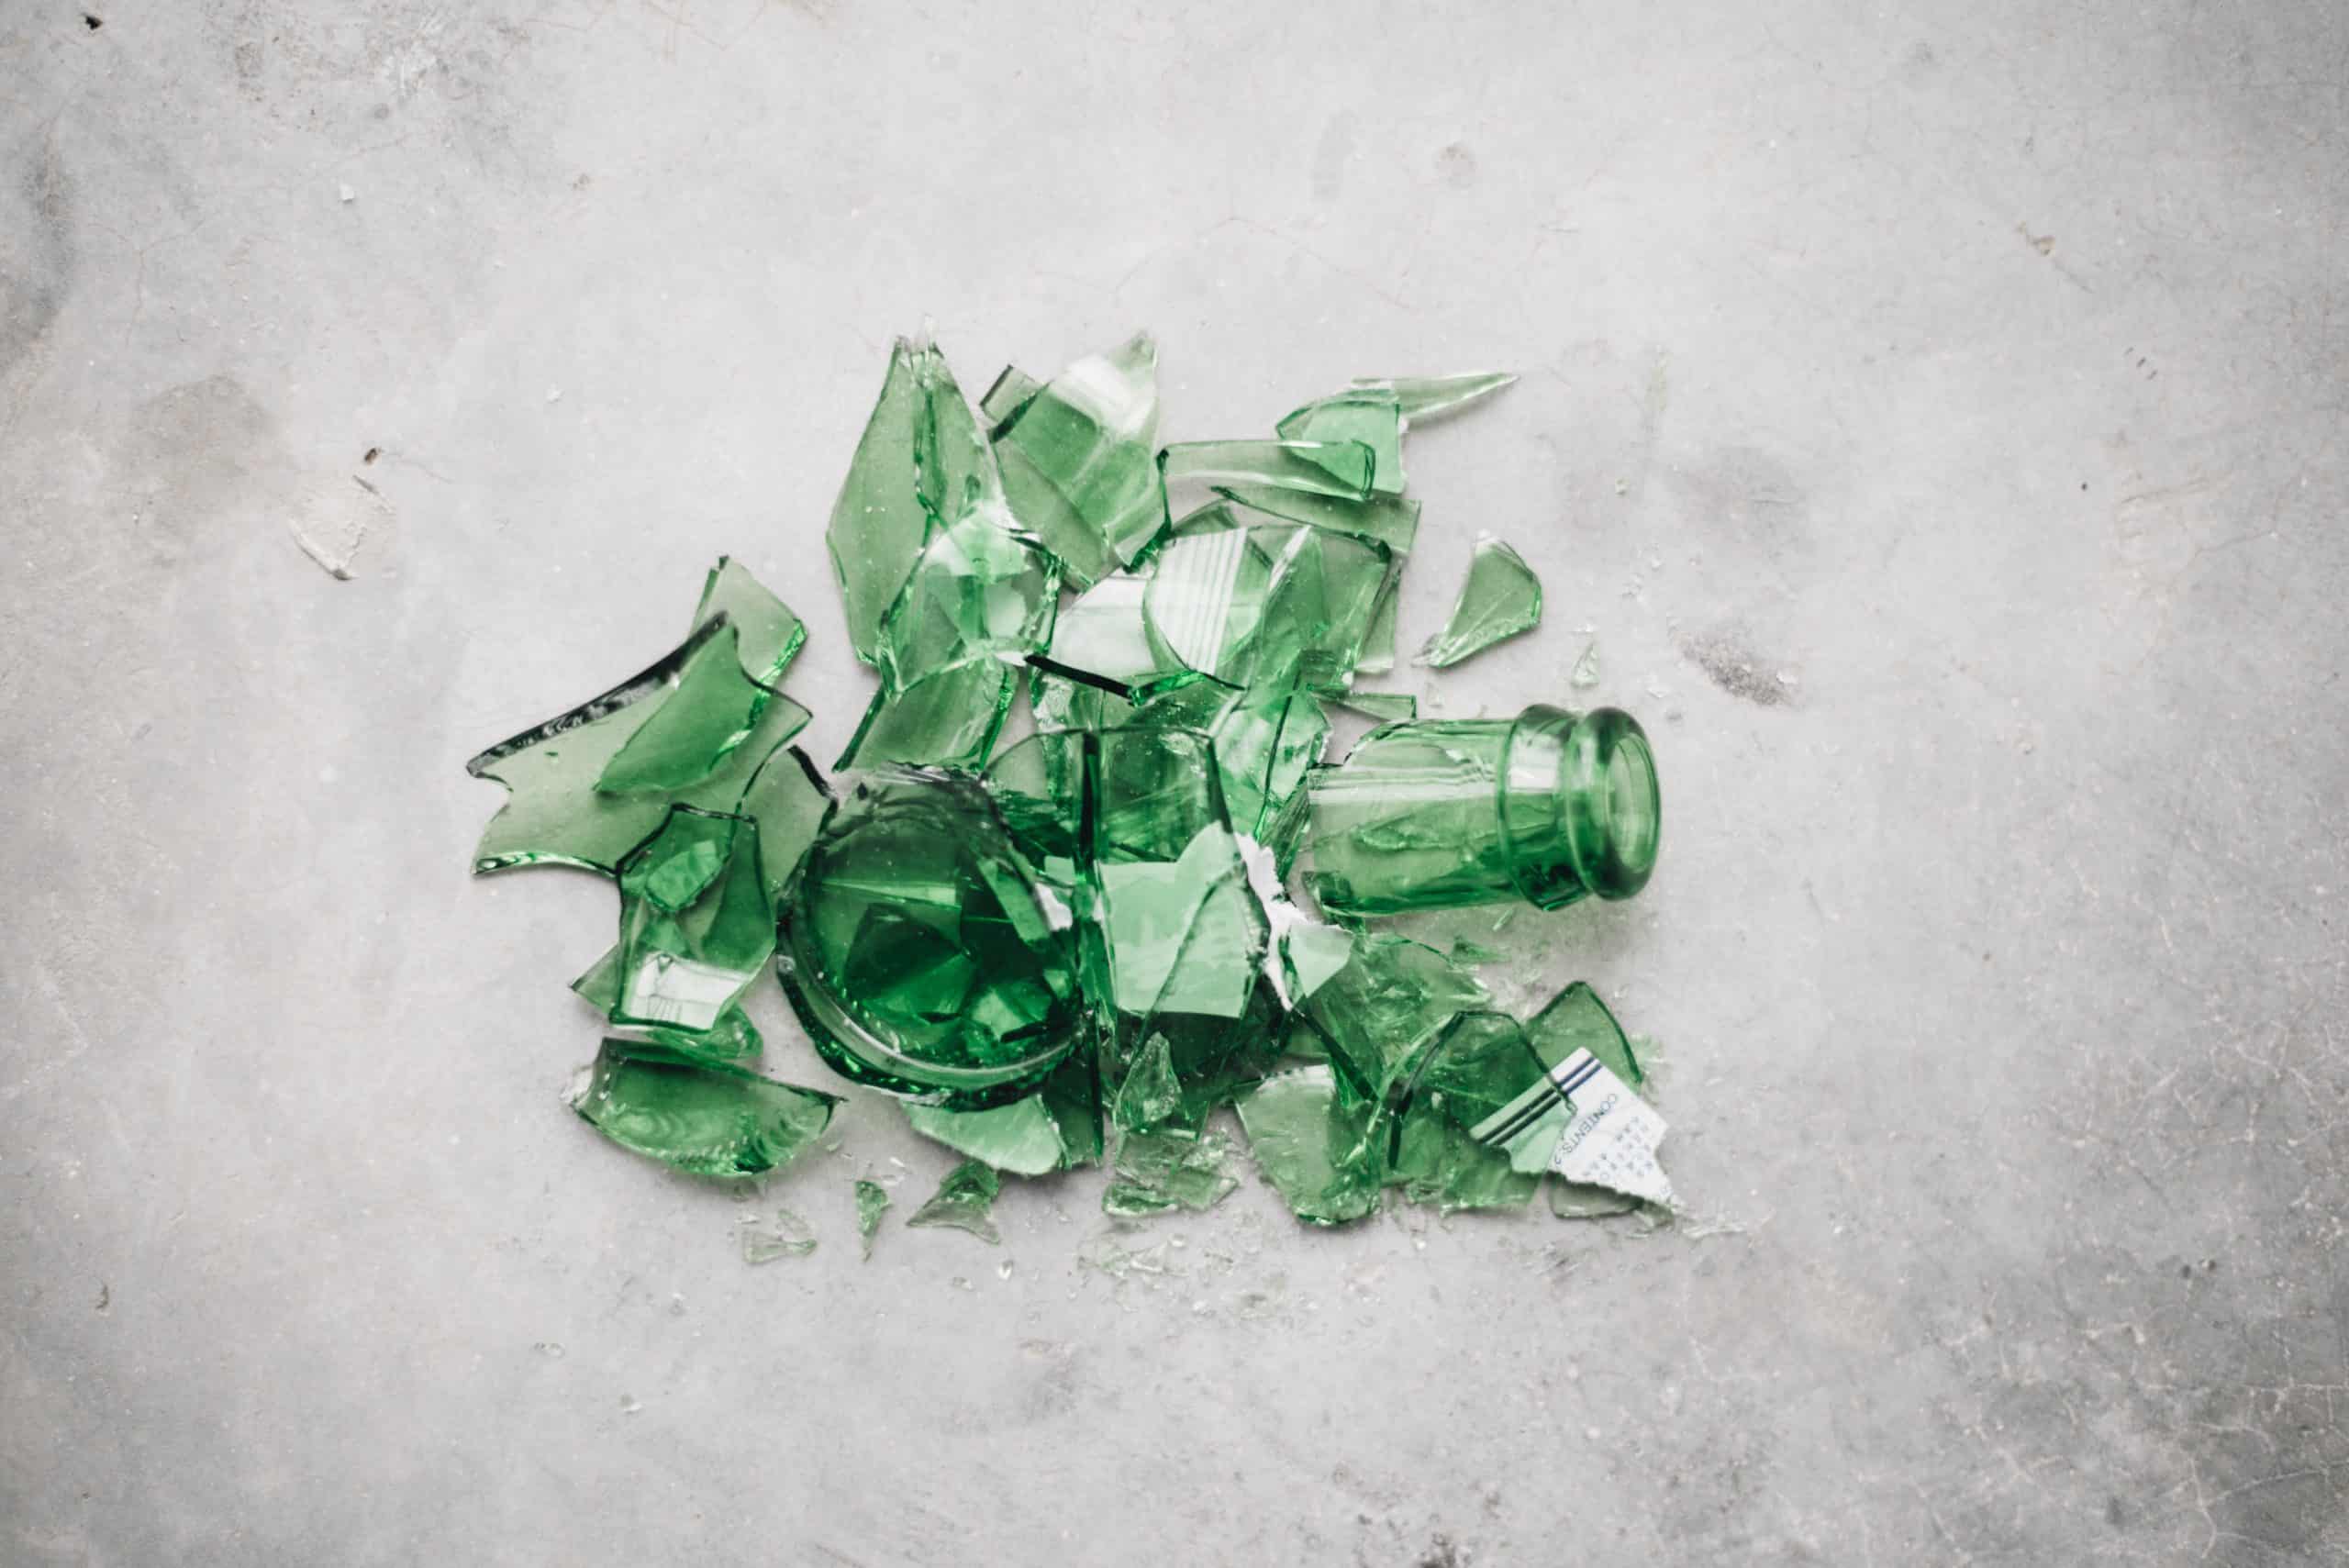 broken green bottle glass